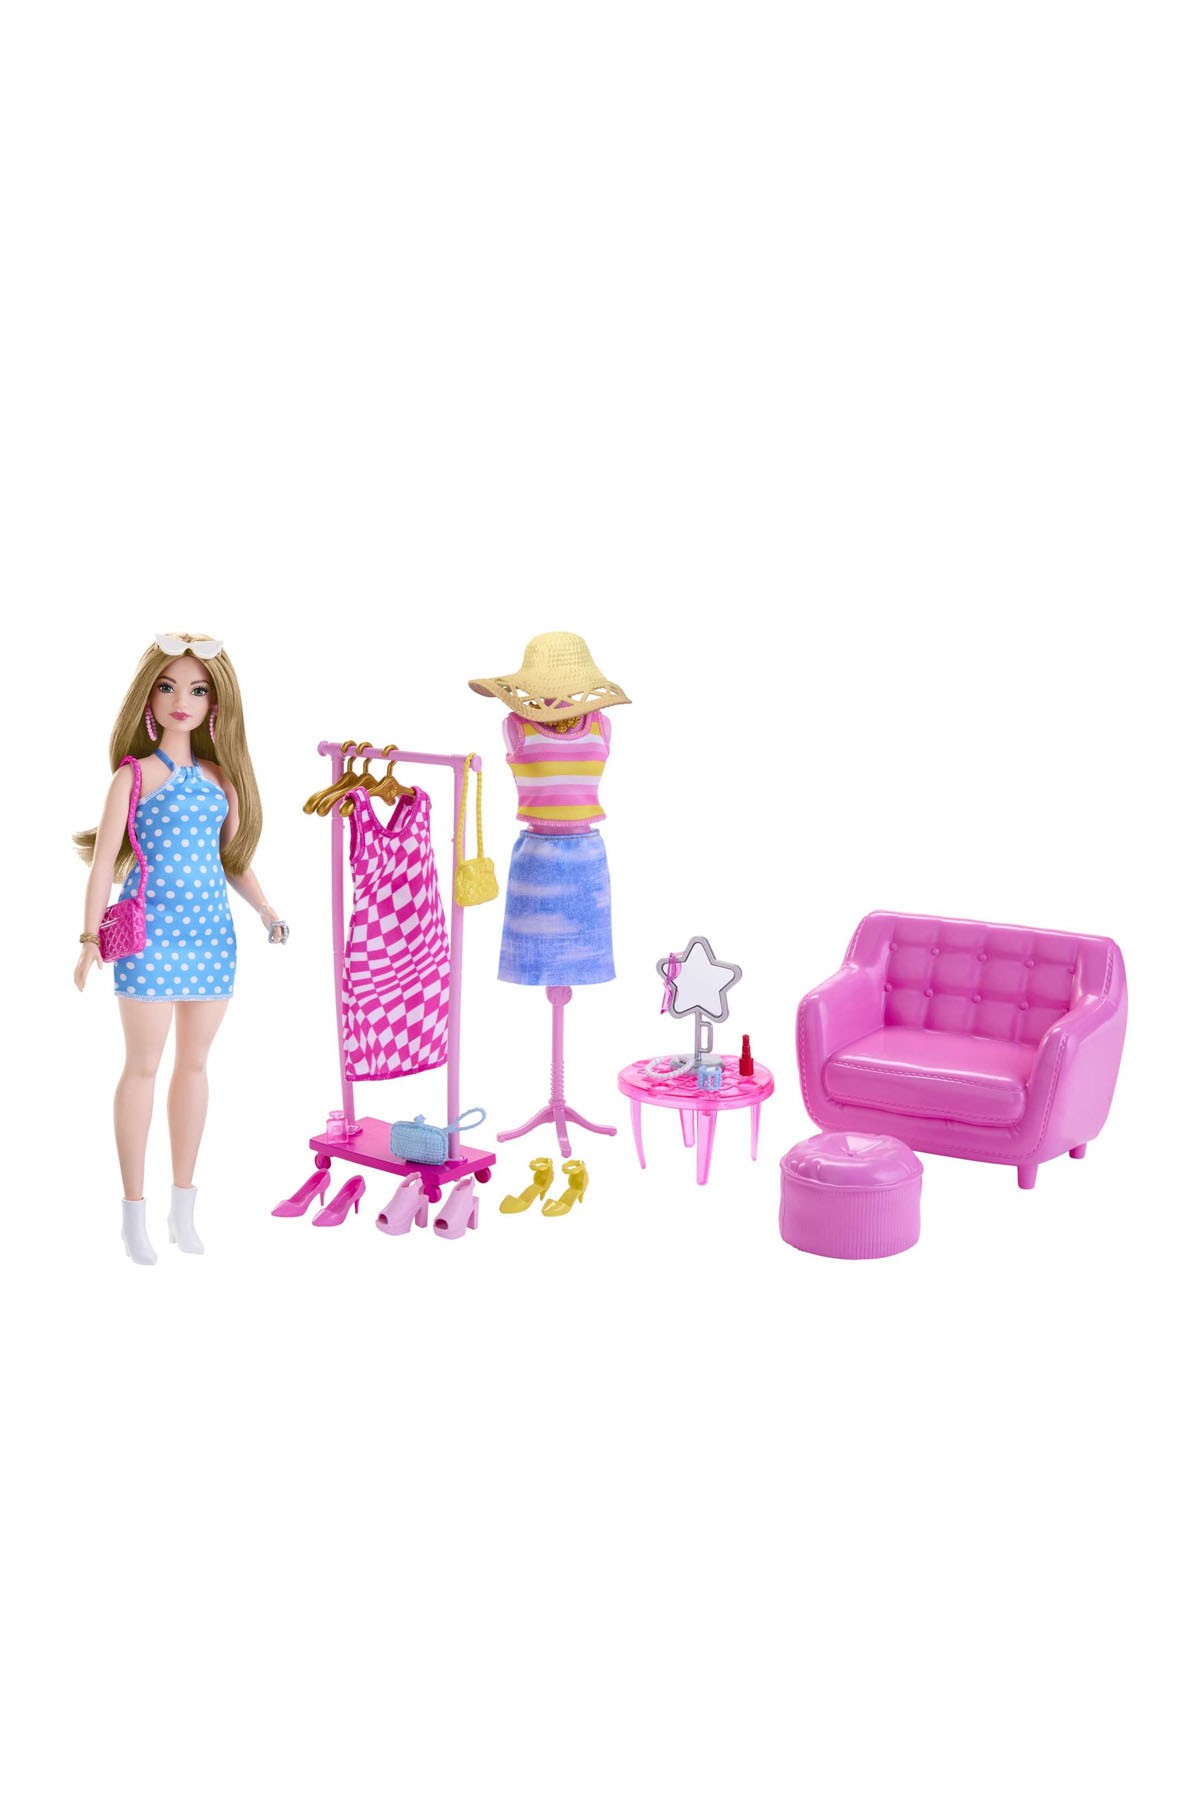 Barbie'nin Kıyafet ve Aksesuar Askısı Oyun Seti